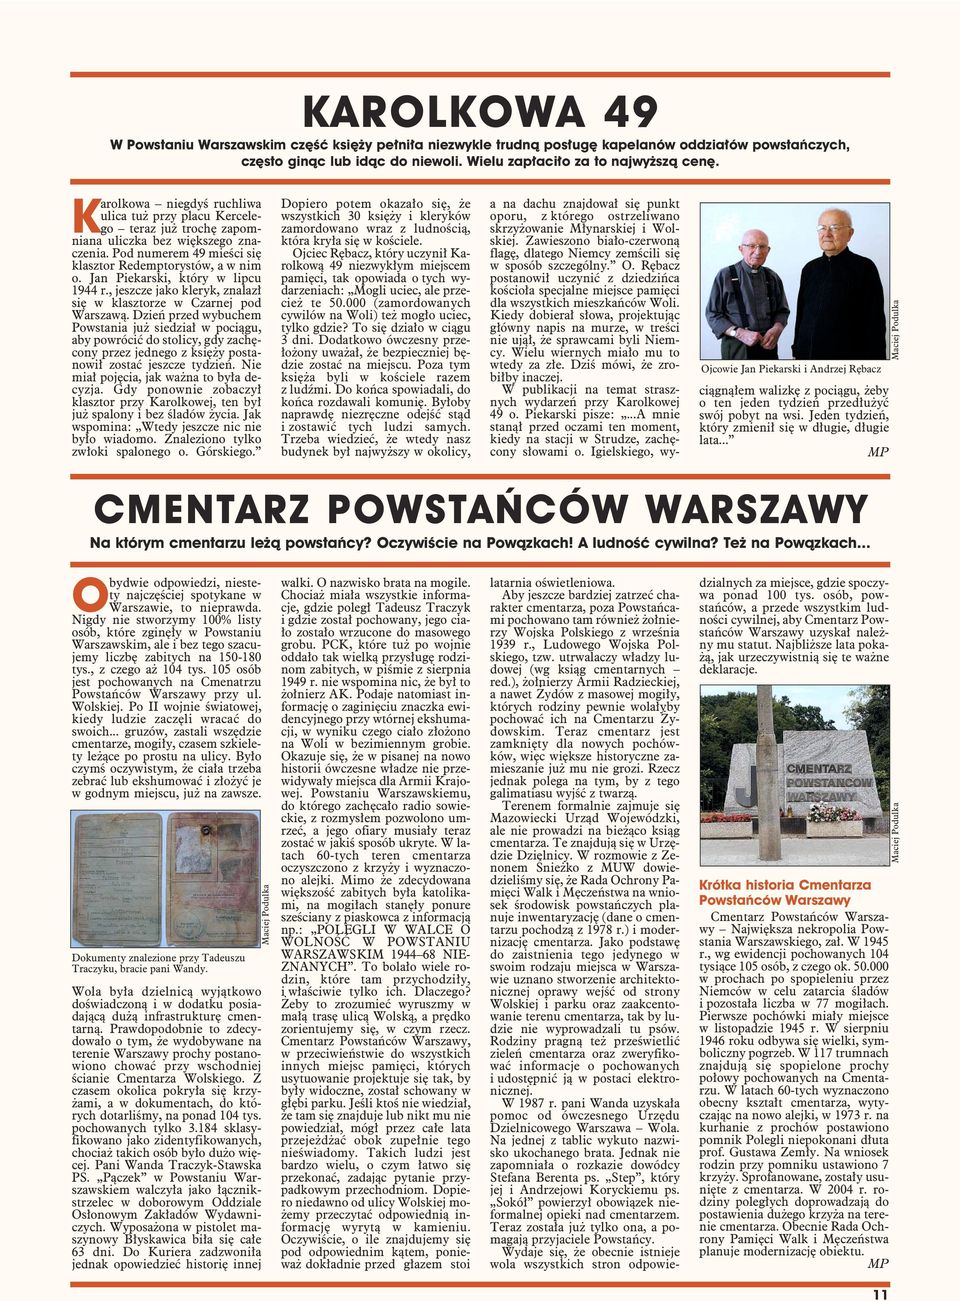 Jan Piekarski, który w lipcu 1944 r., jeszcze jako kleryk, znalazł się w klasztorze w Czarnej pod Warszawą.